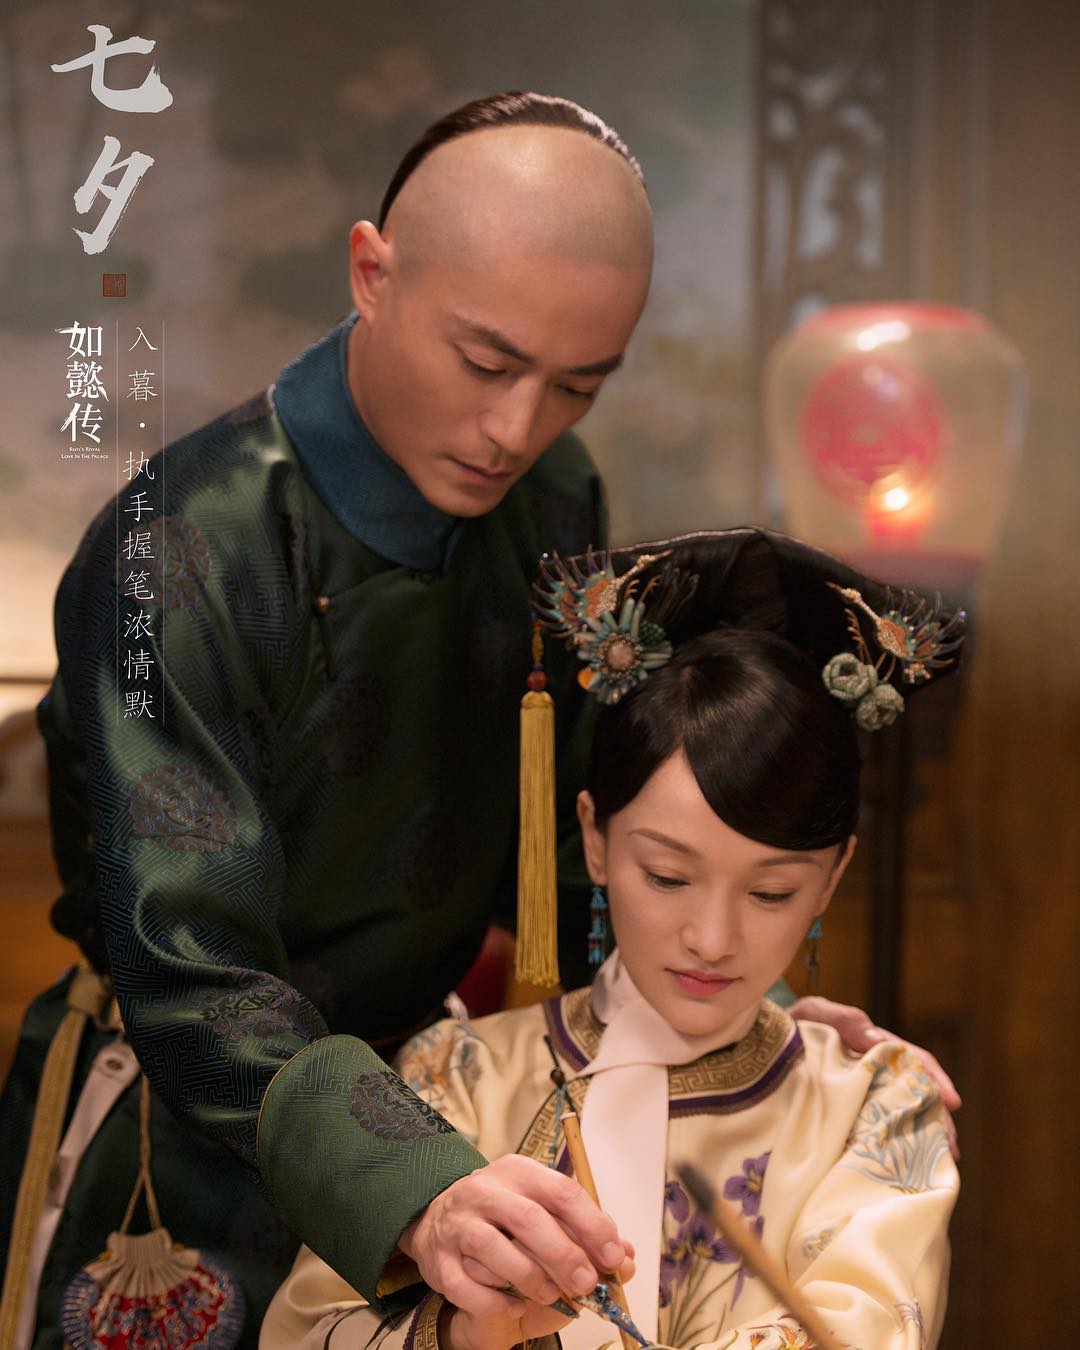 Phim truyền hình Trung Quốc hay nhất mọi thời đại: Như Ý truyện - Ruyi's Royal Love in the Palace (2018)